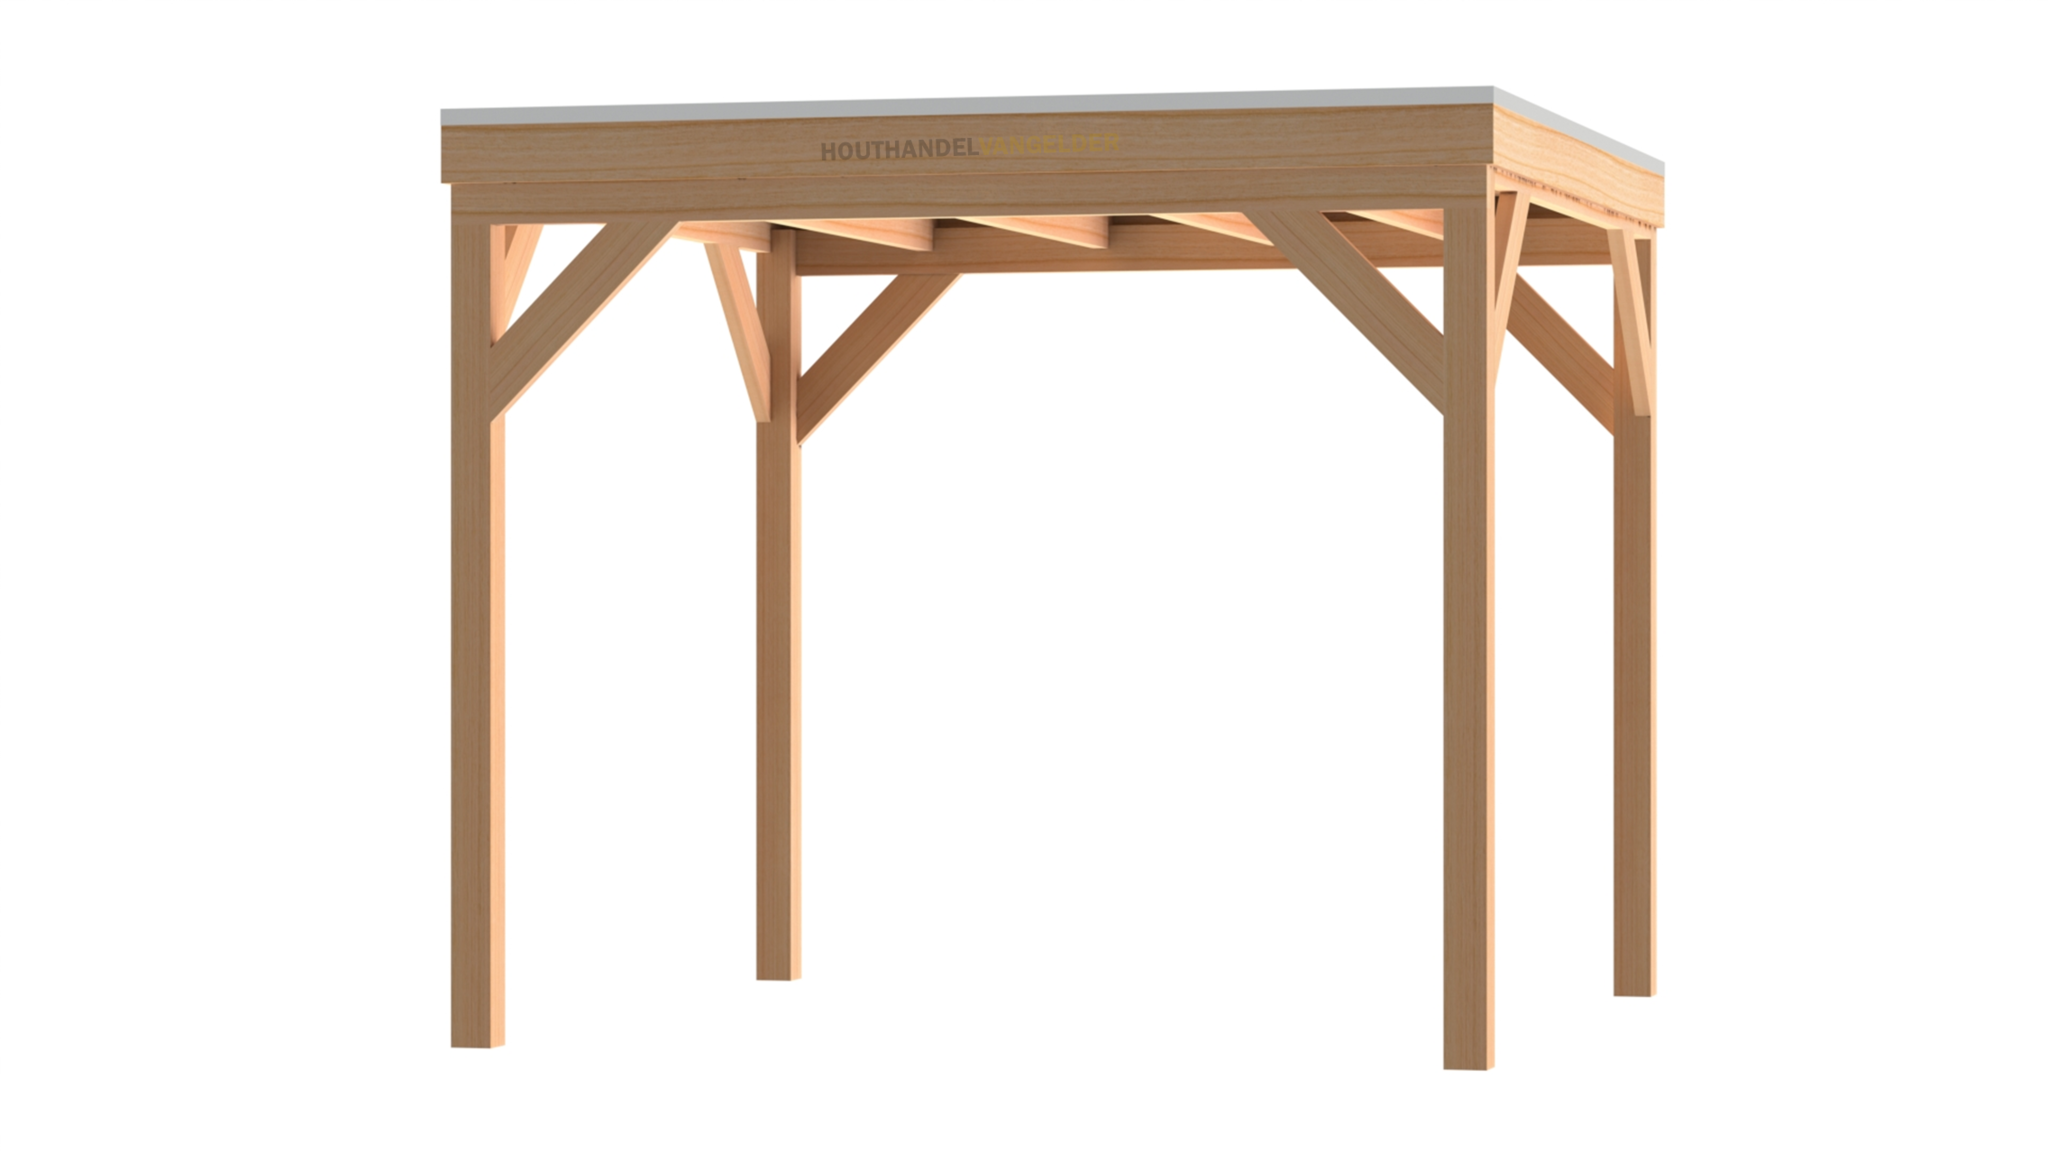 Douglas houten overkapping met plat dak. Doe het zelf overkapping pakket